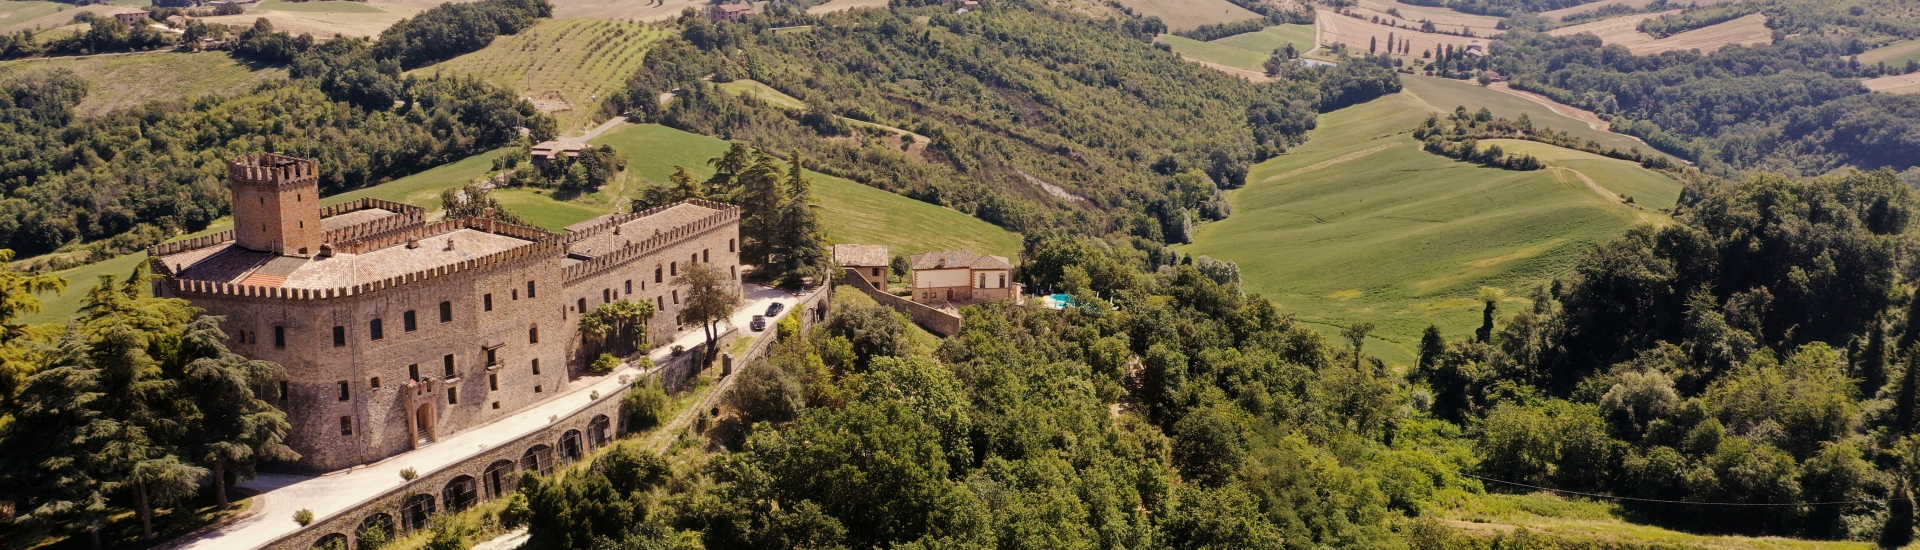 Castello di Tabiano - Vista aerea del Castello di Tabiano foto di: |Castello di Tabiano| - Castello di Tabiano